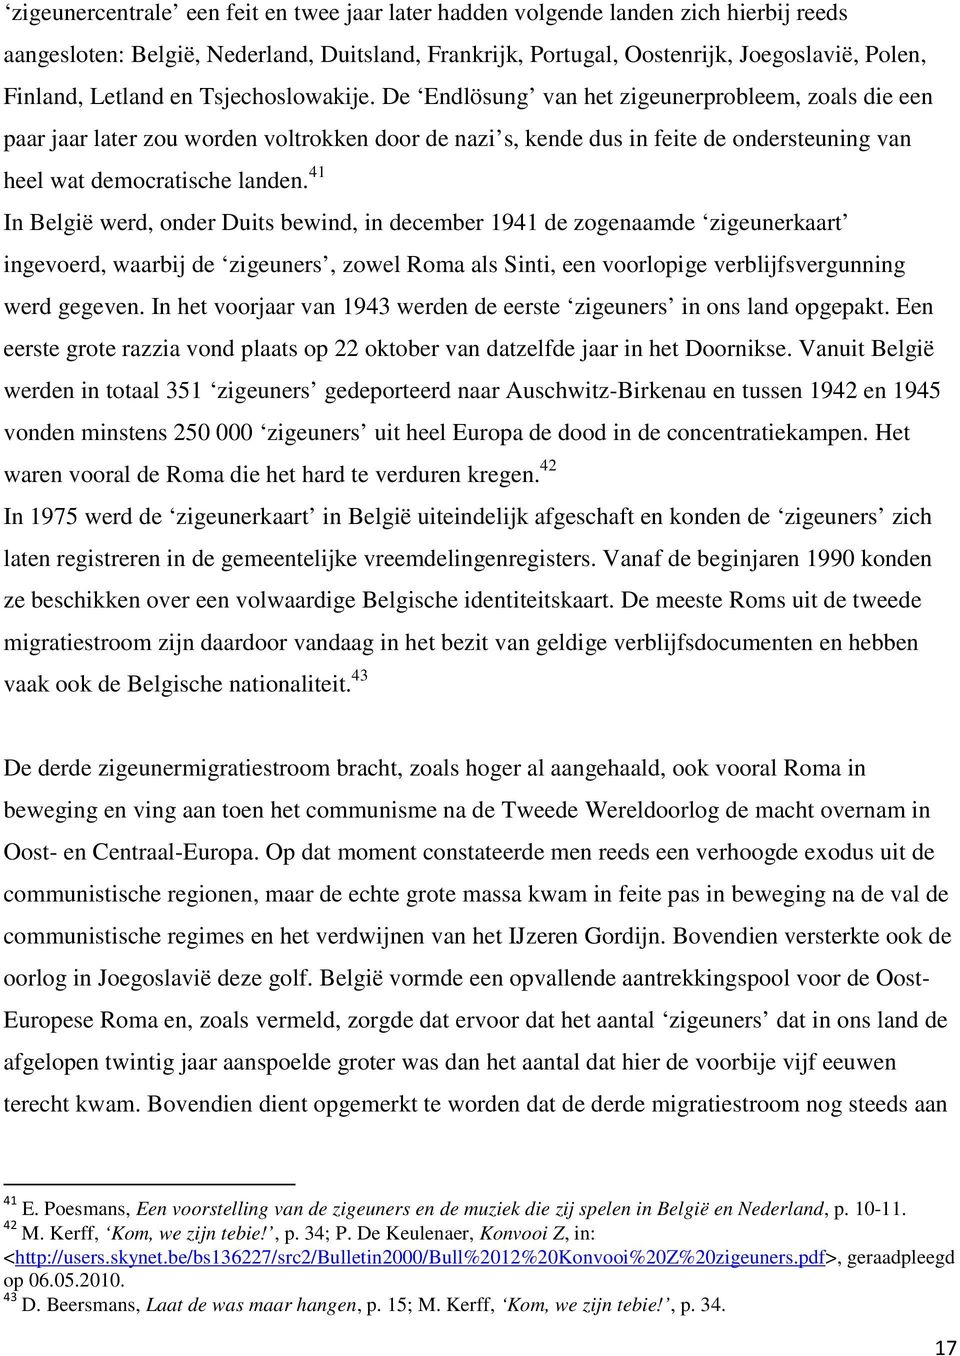 41 In België werd, onder Duits bewind, in december 1941 de zogenaamde zigeunerkaart ingevoerd, waarbij de zigeuners, zowel Roma als Sinti, een voorlopige verblijfsvergunning werd gegeven.